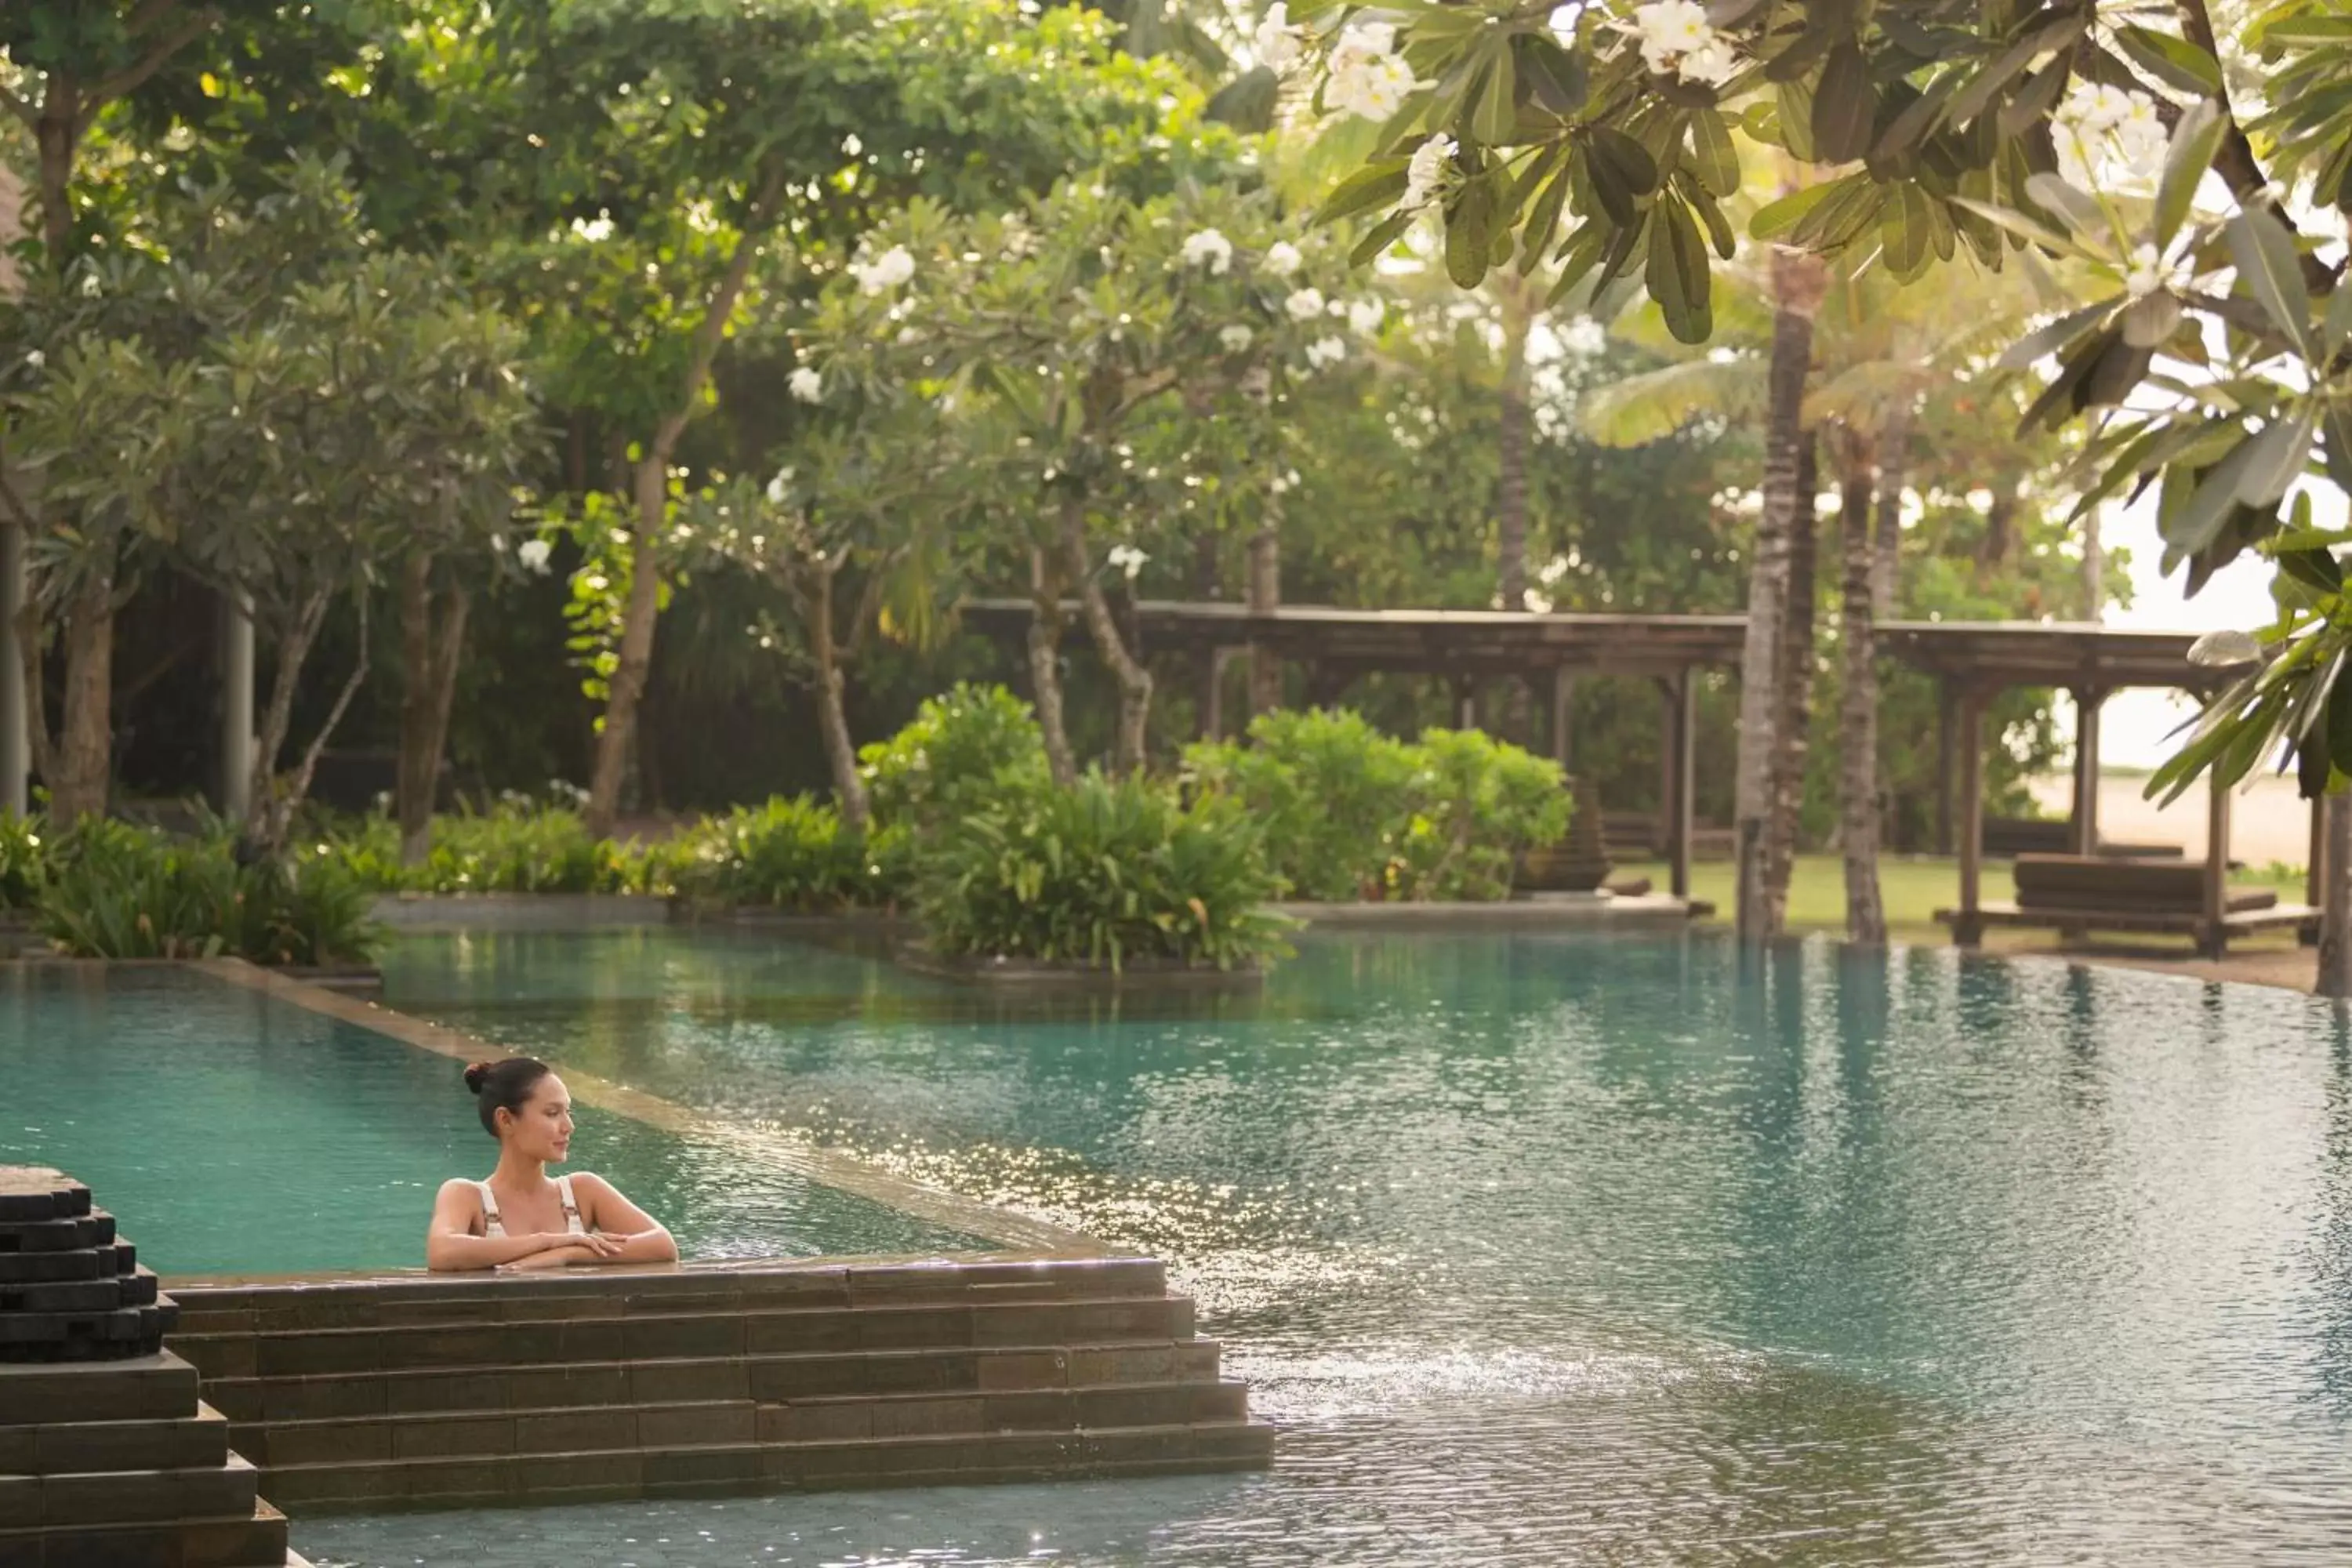 Swimming pool in The Ritz-Carlton Bali